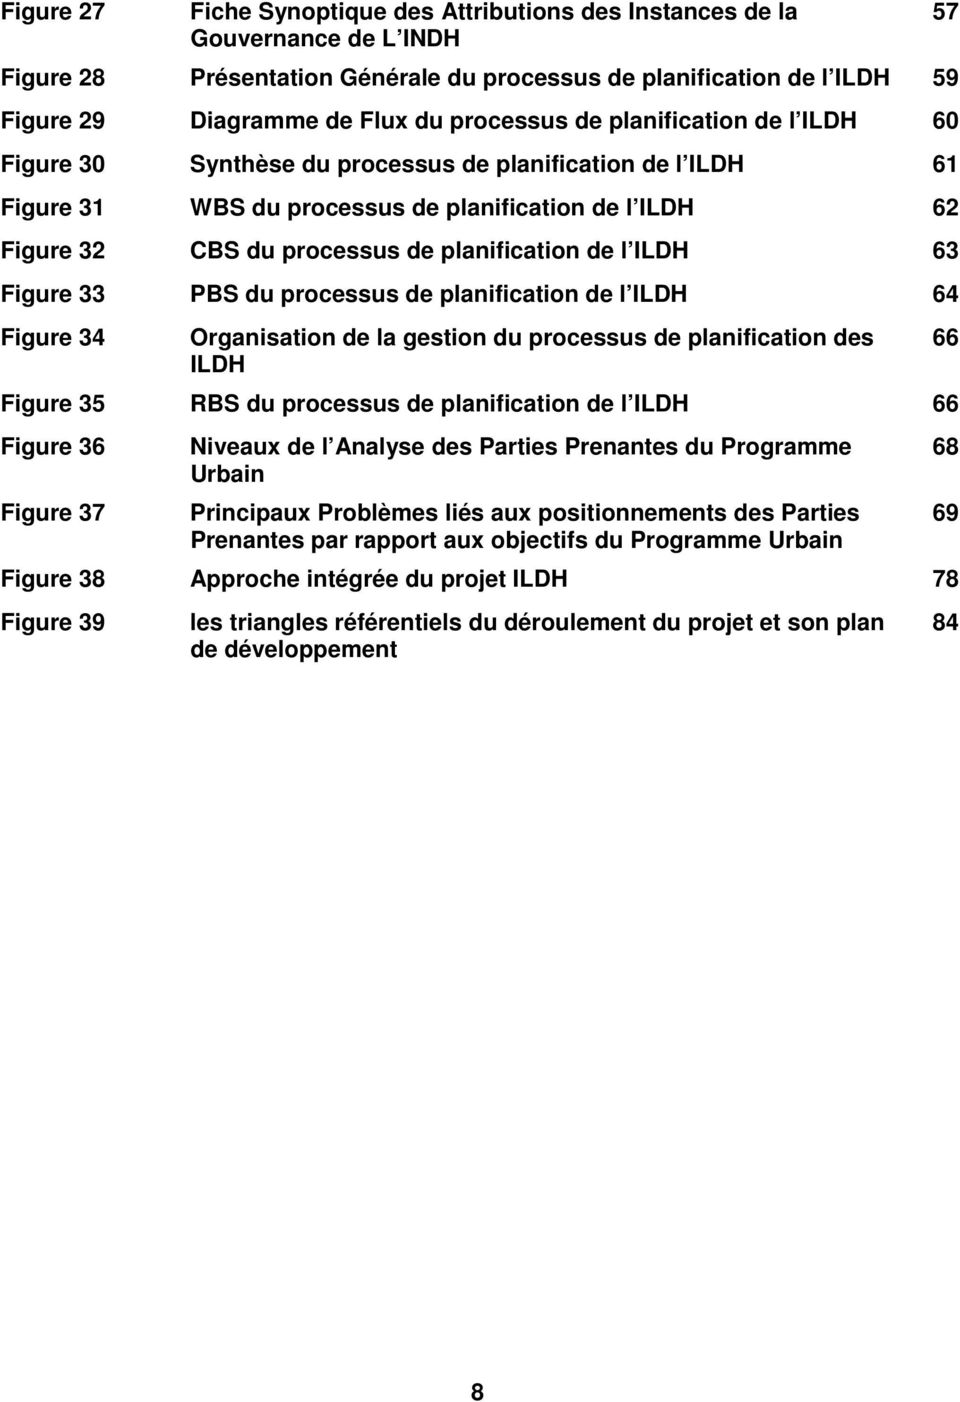 planification de l ILDH 63 Figure 33 PBS du processus de planification de l ILDH 64 Figure 34 Organisation de la gestion du processus de planification des ILDH Figure 35 RBS du processus de